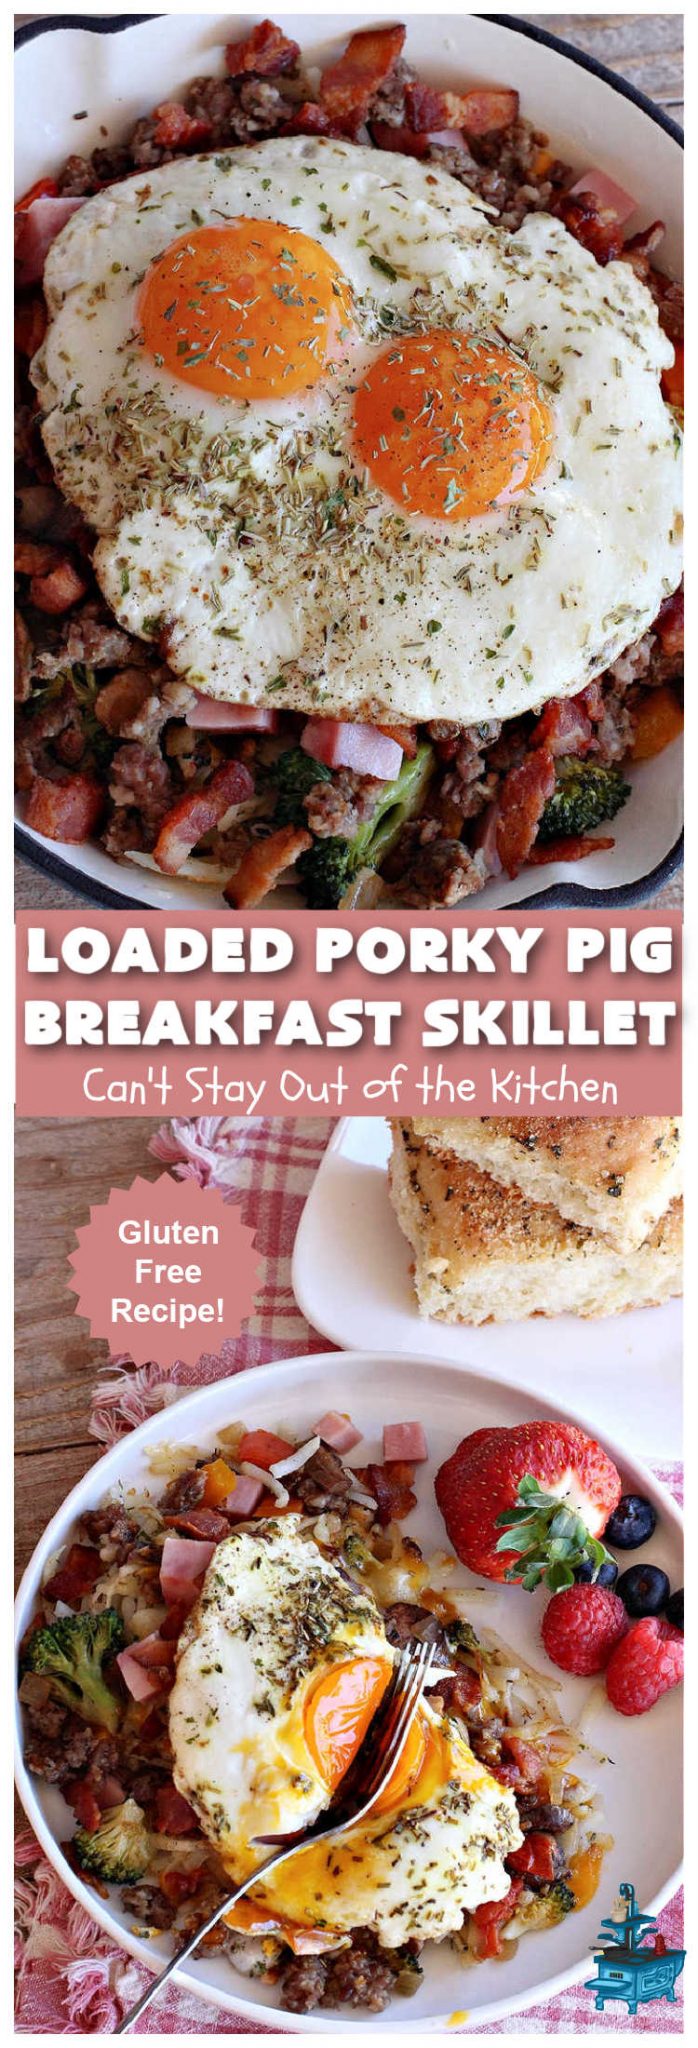 Loaded Porky Pig Breakfast Skillet Collage 1 698x2048 